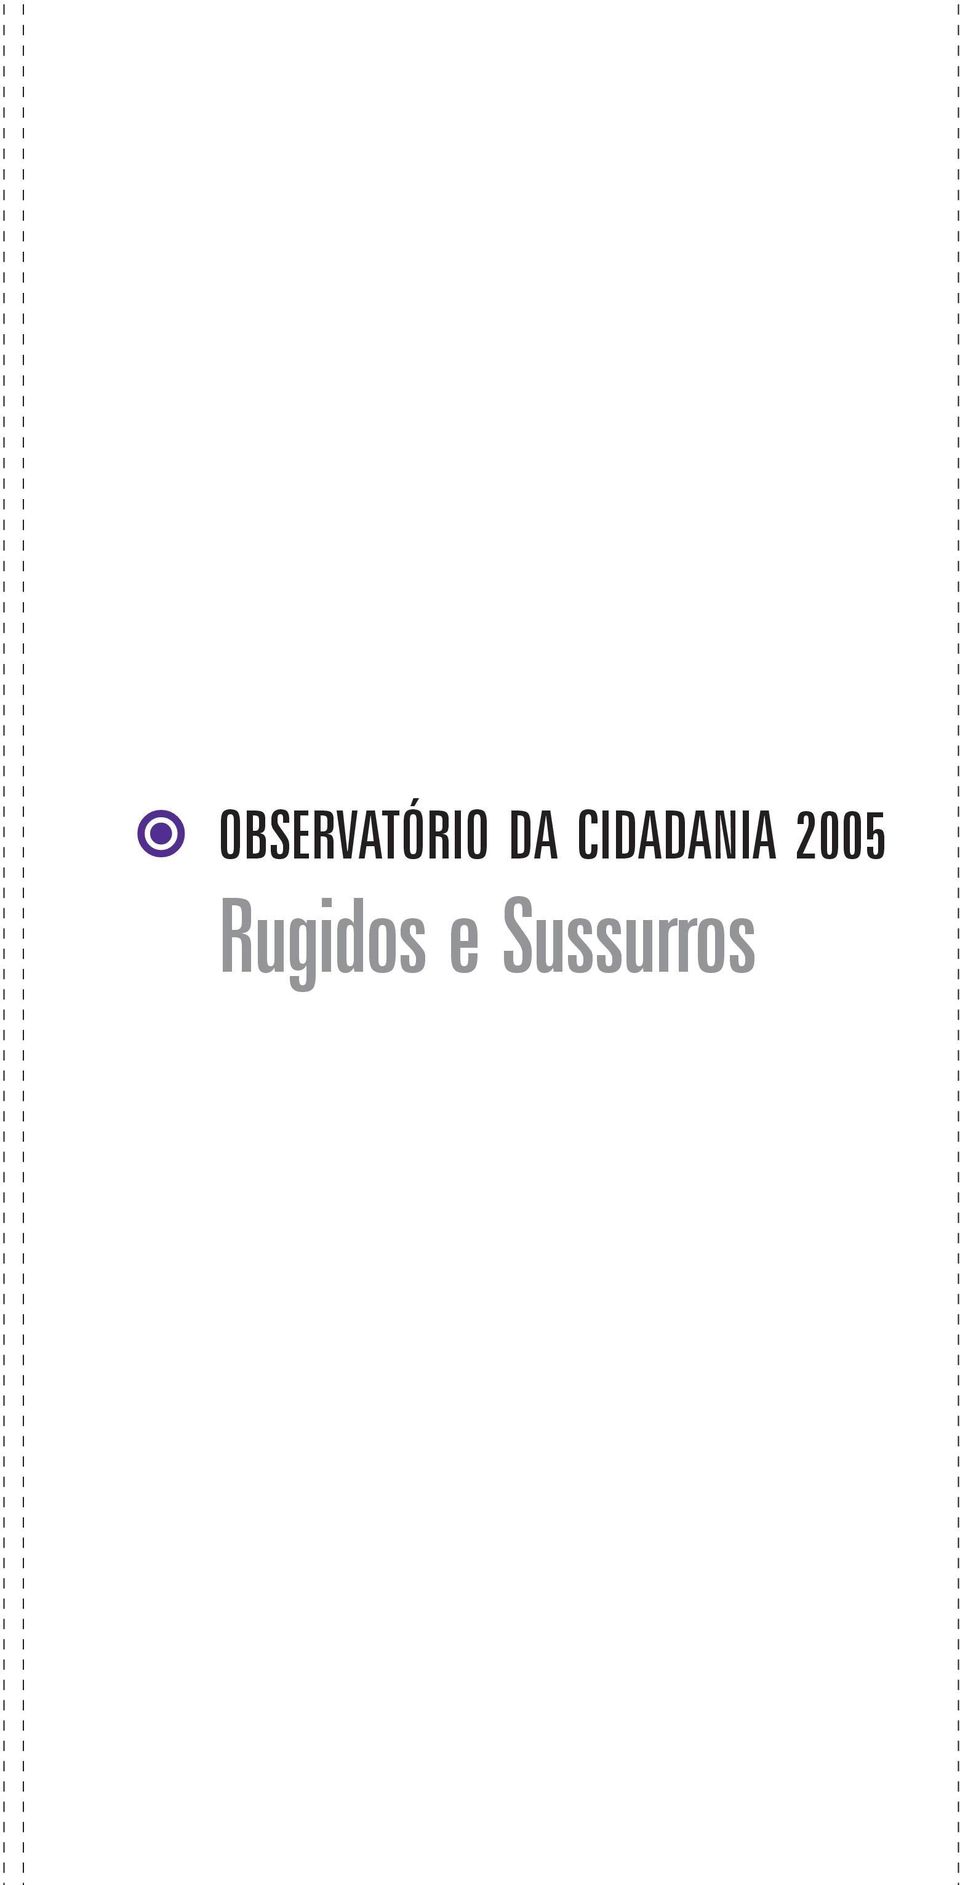 2005 Rugidos